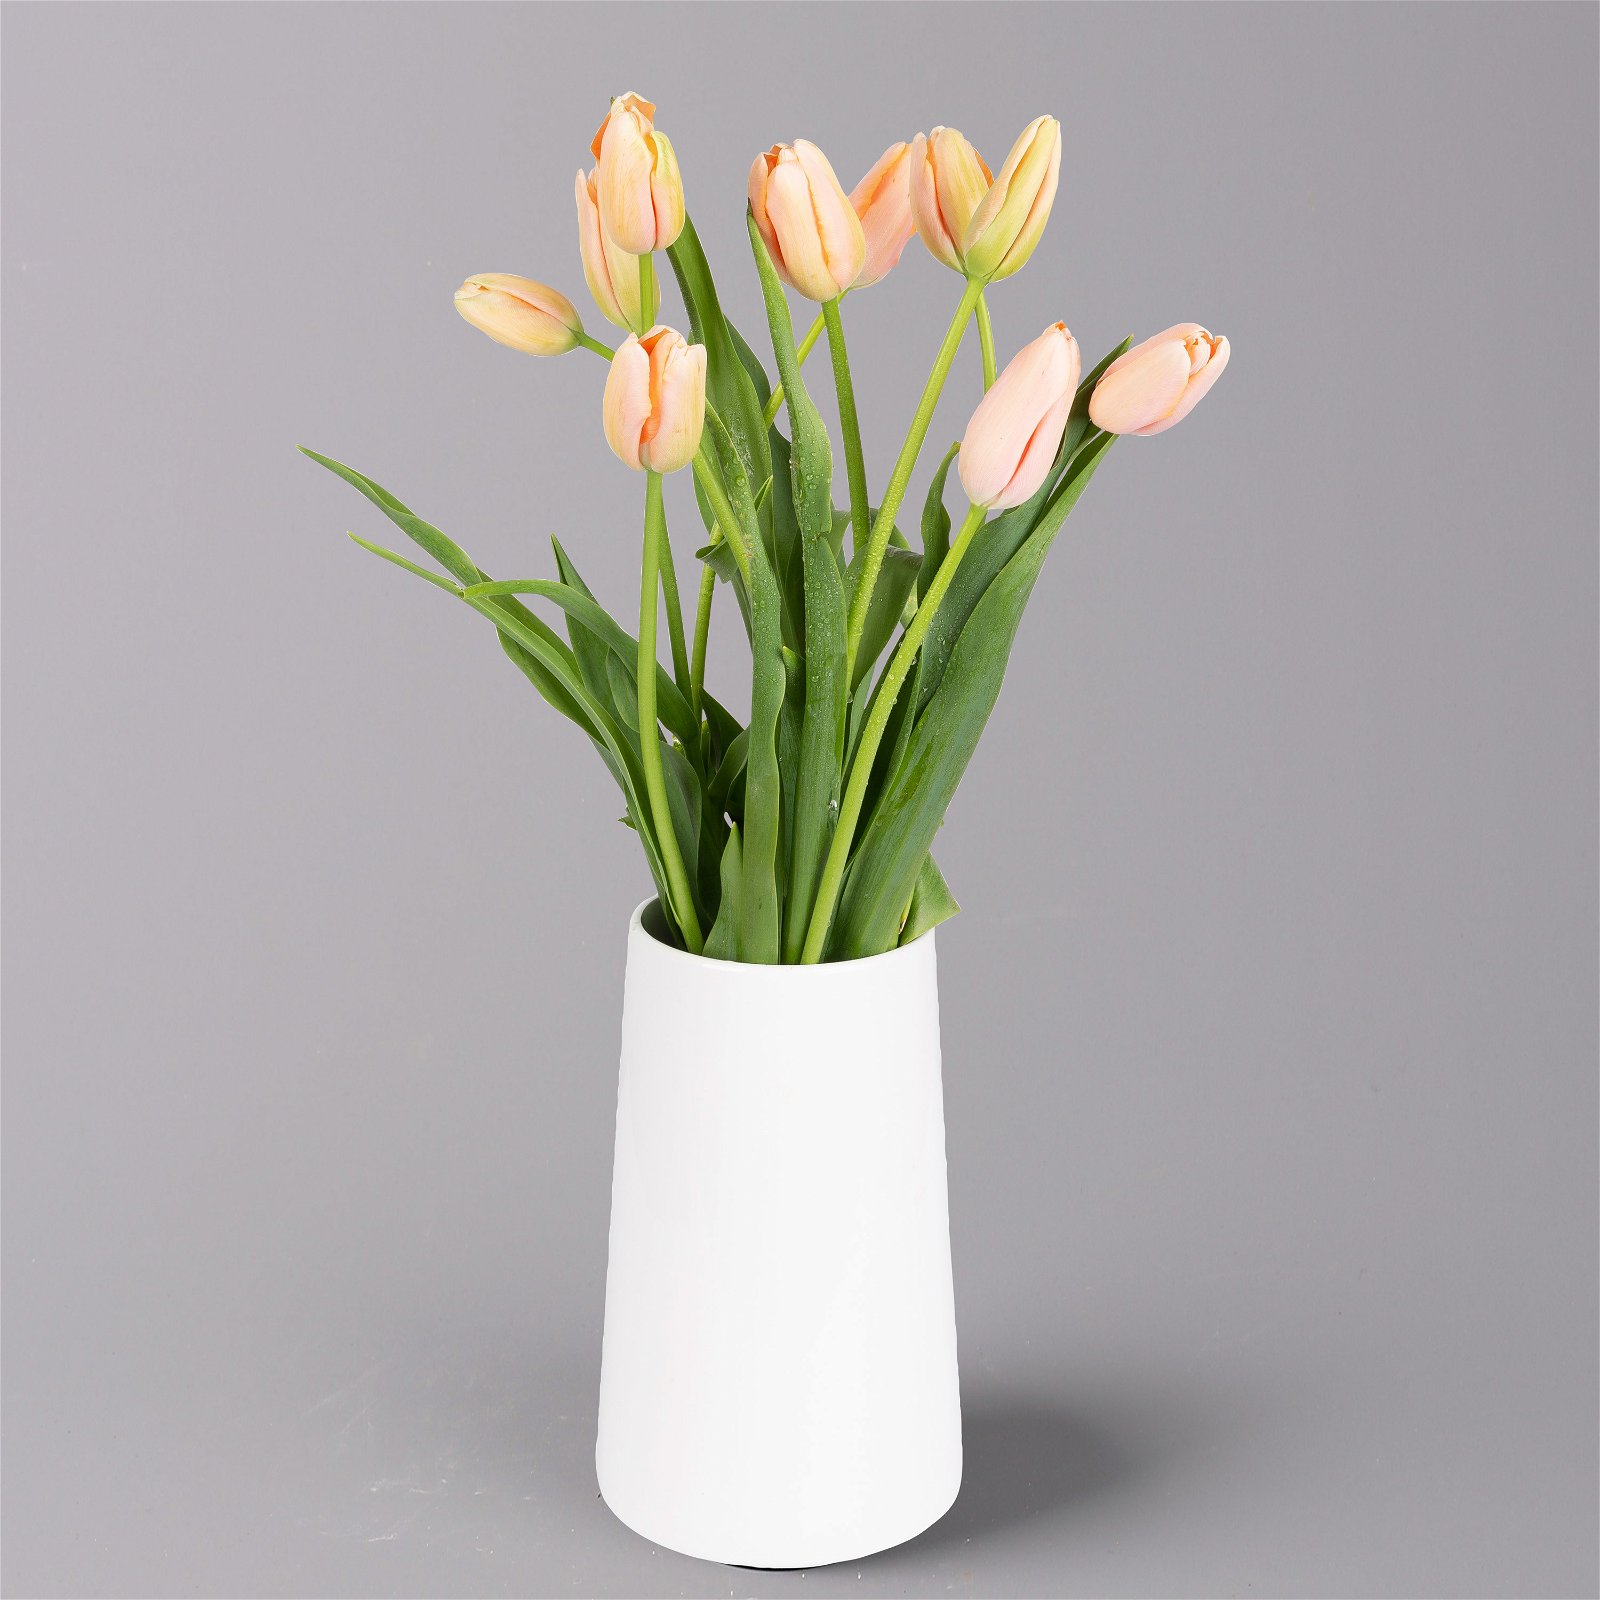 Blumenbund  mit französischen Tulpen, 10er-Bund, apricot, inkl. gratis Grußkarte